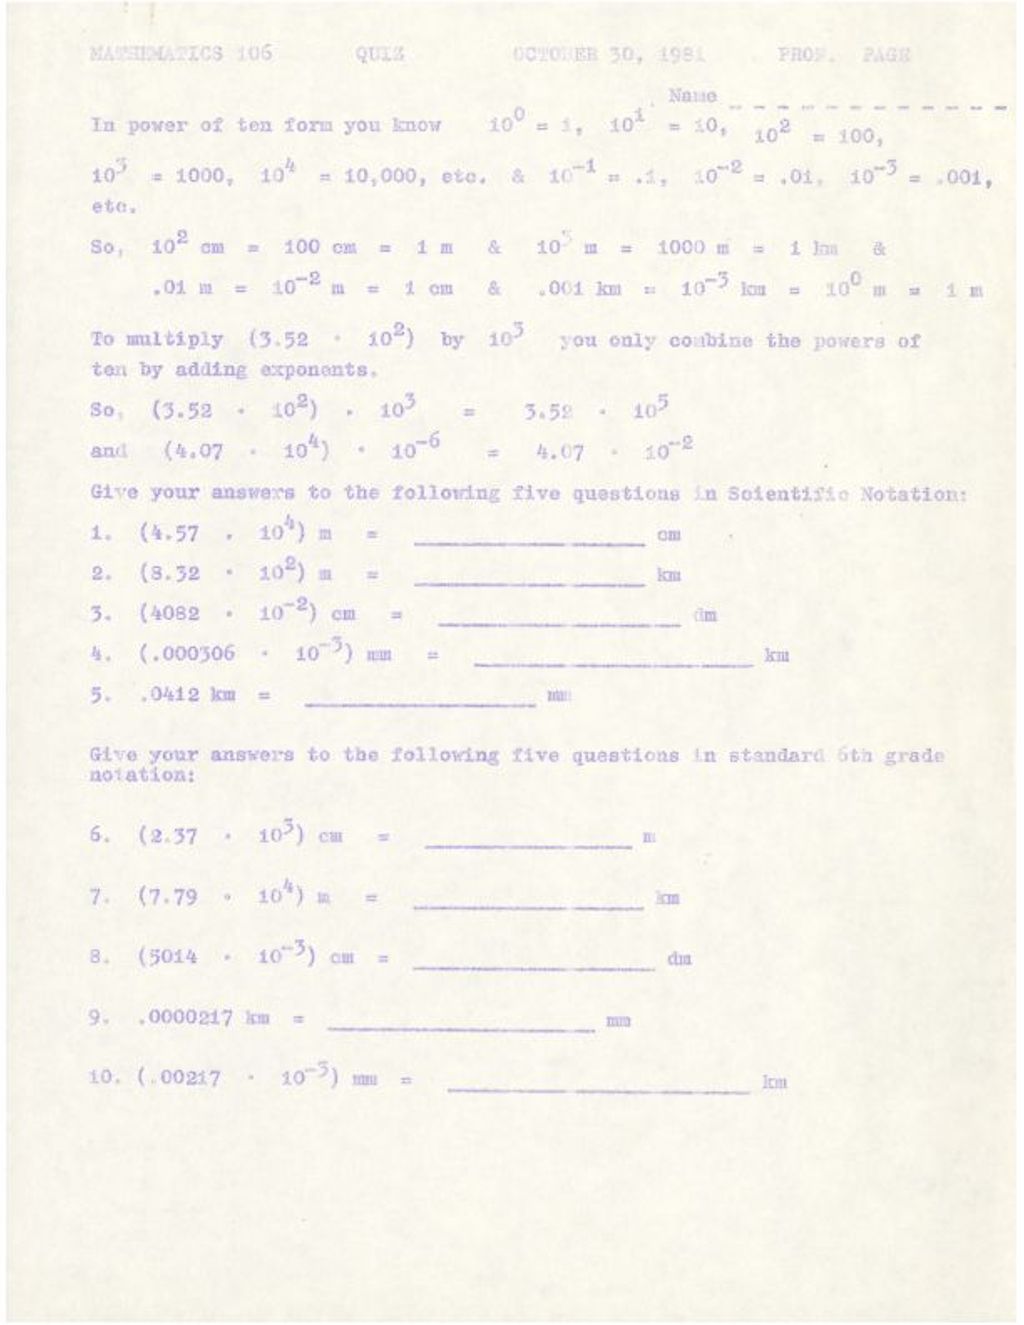 Miniature of Math 106 Quiz (scientific notation) Oct. 1981